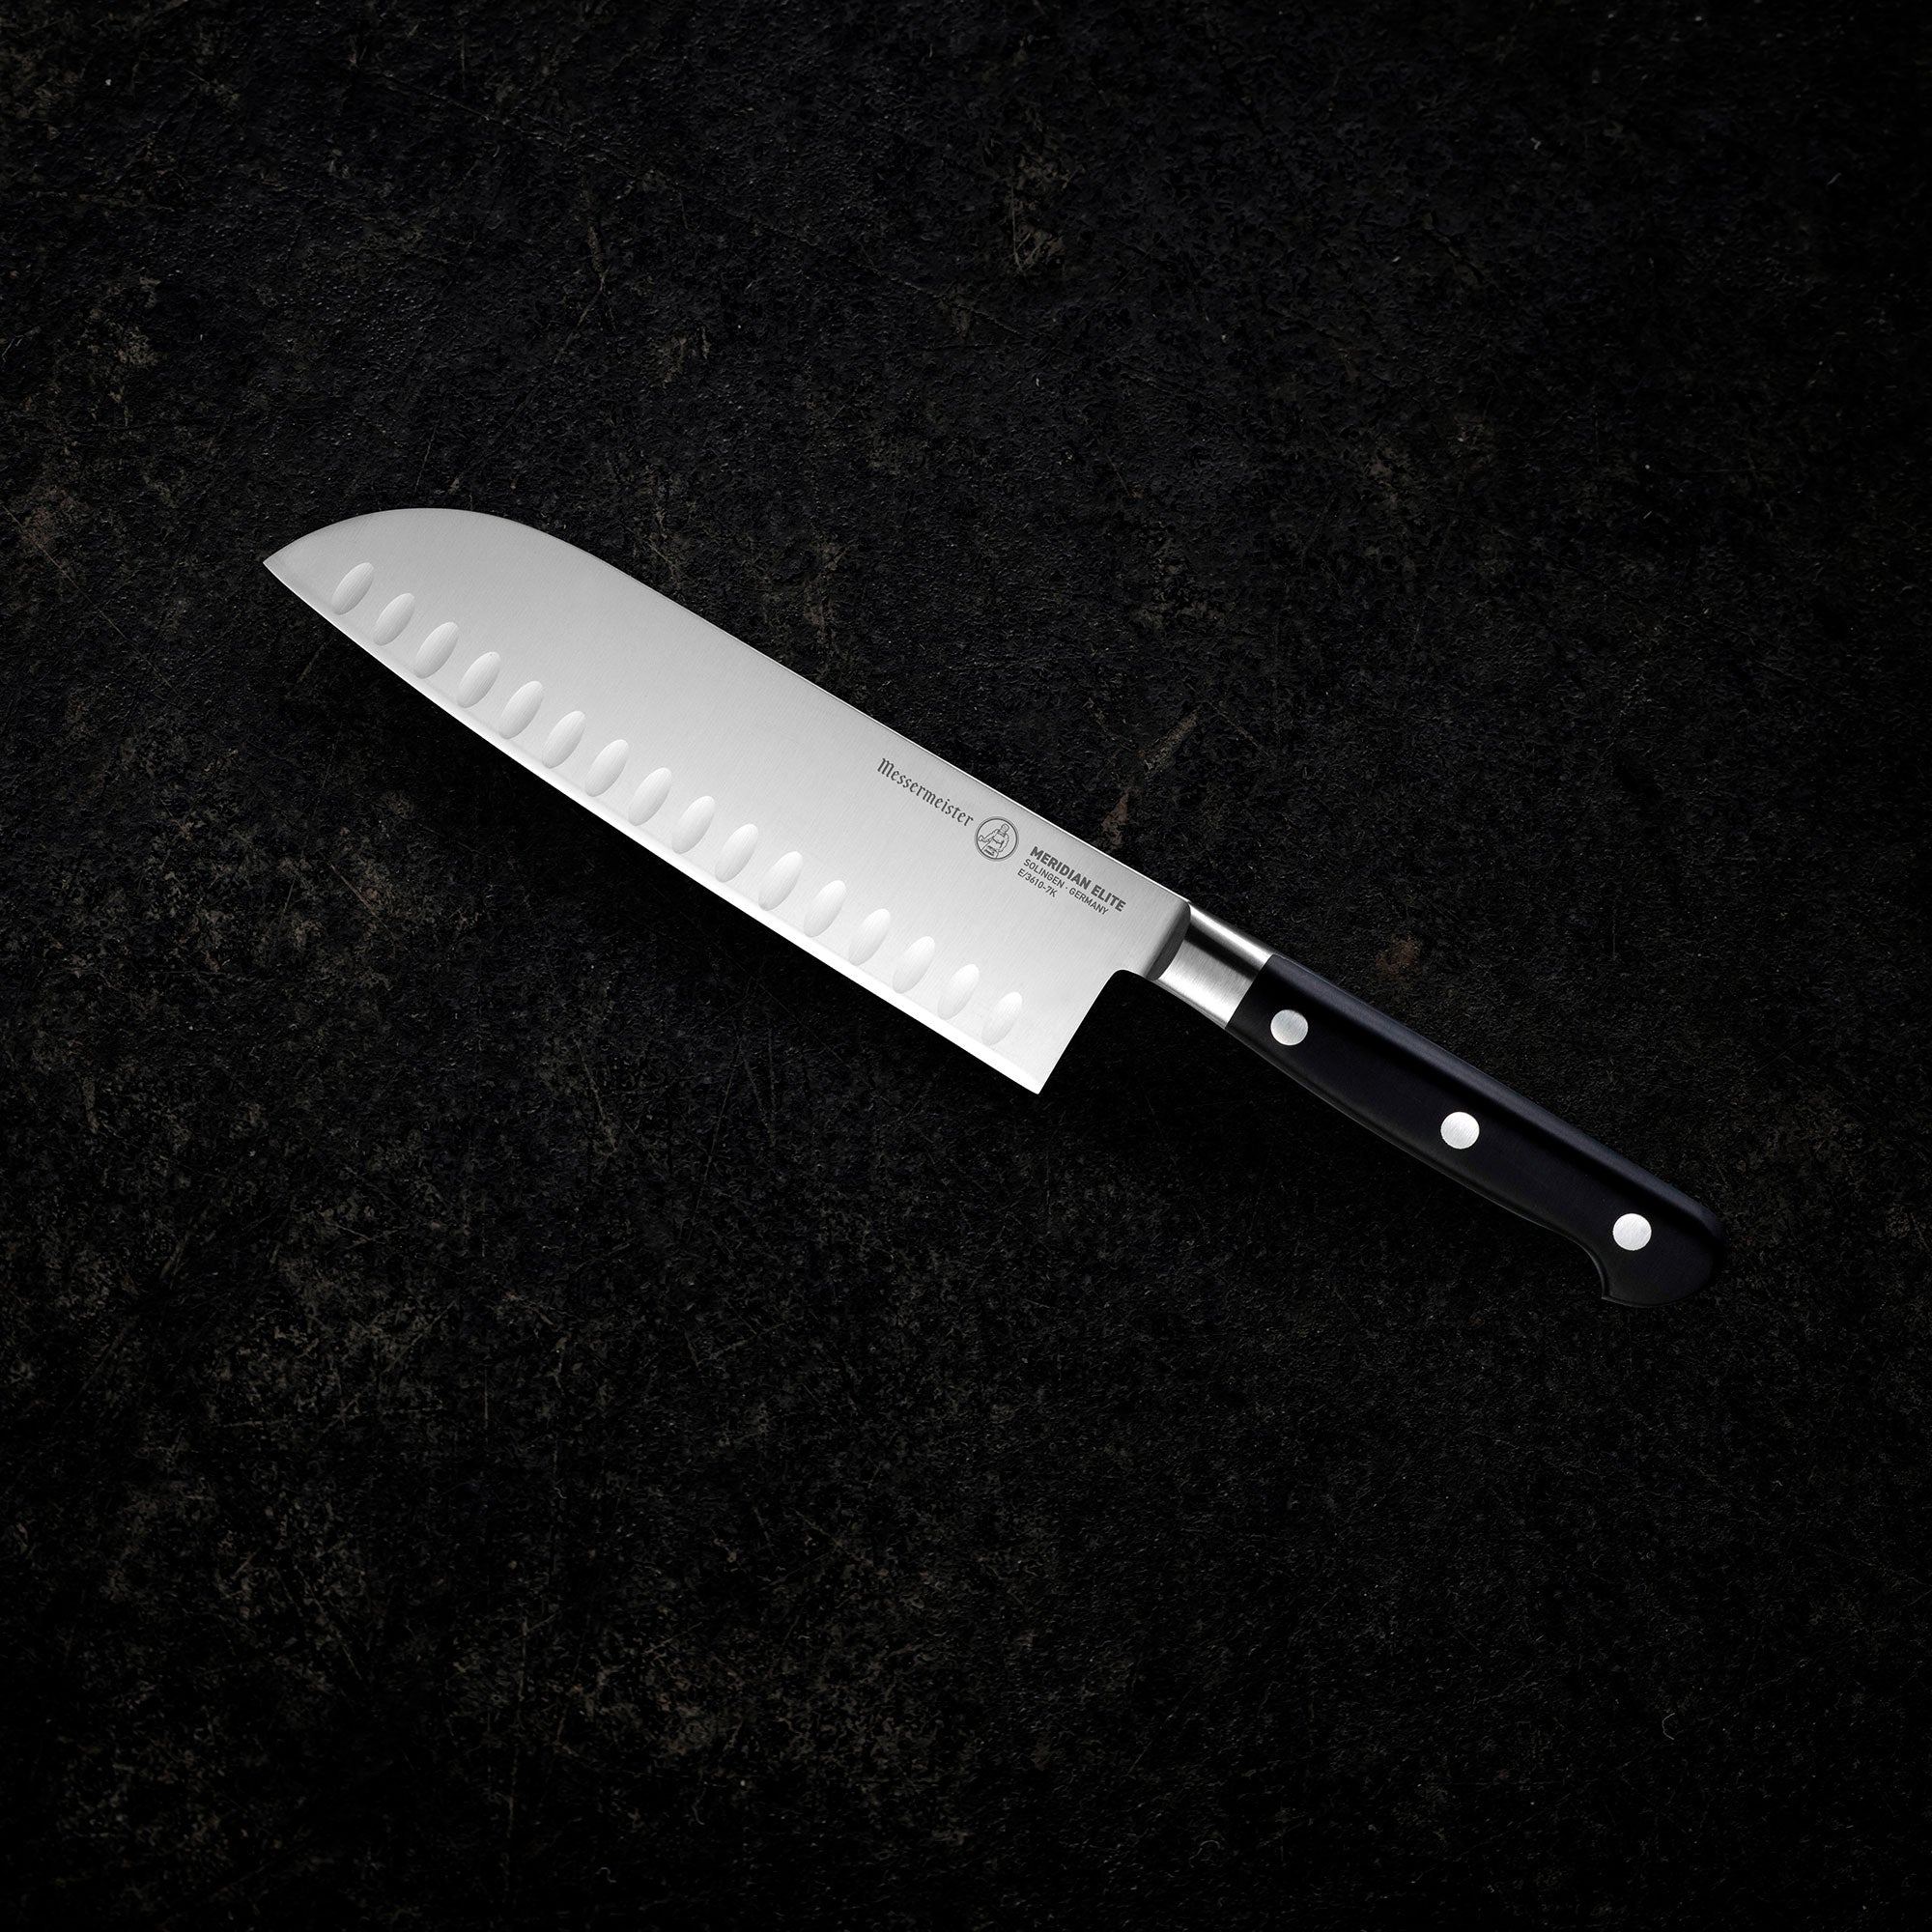 EaZy MealZ 2-Piece Knife Set 7-inch Santoku Knife and 4-inch